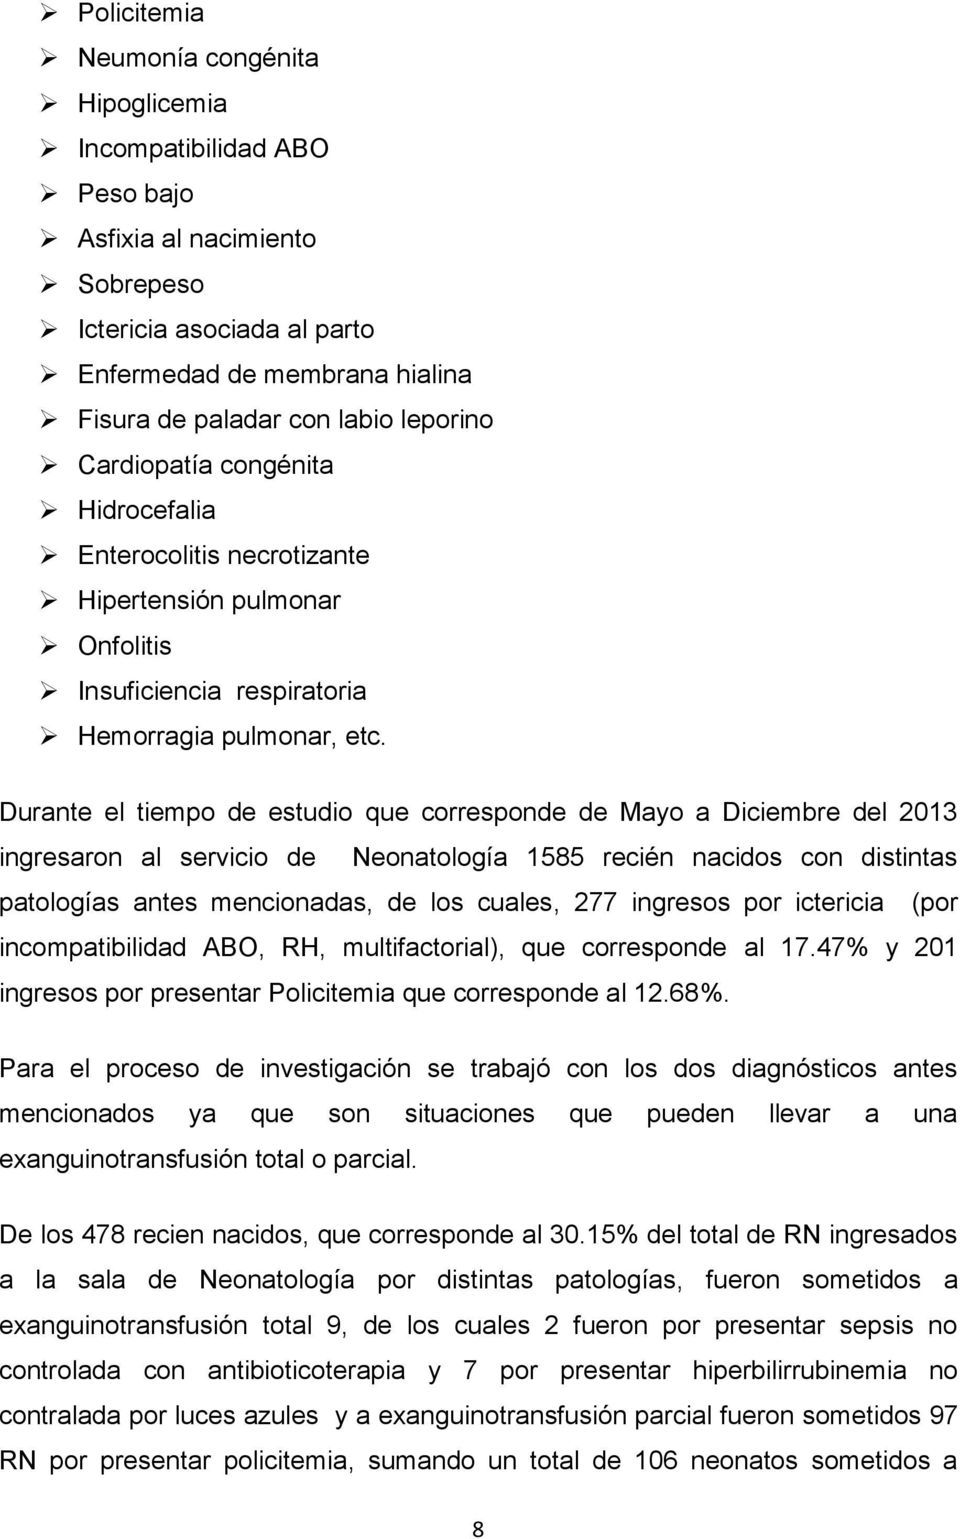 Durante el tiempo de estudio que corresponde de Mayo a Diciembre del 2013 ingresaron al servicio de Neonatología 1585 recién nacidos con distintas patologías antes mencionadas, de los cuales, 277